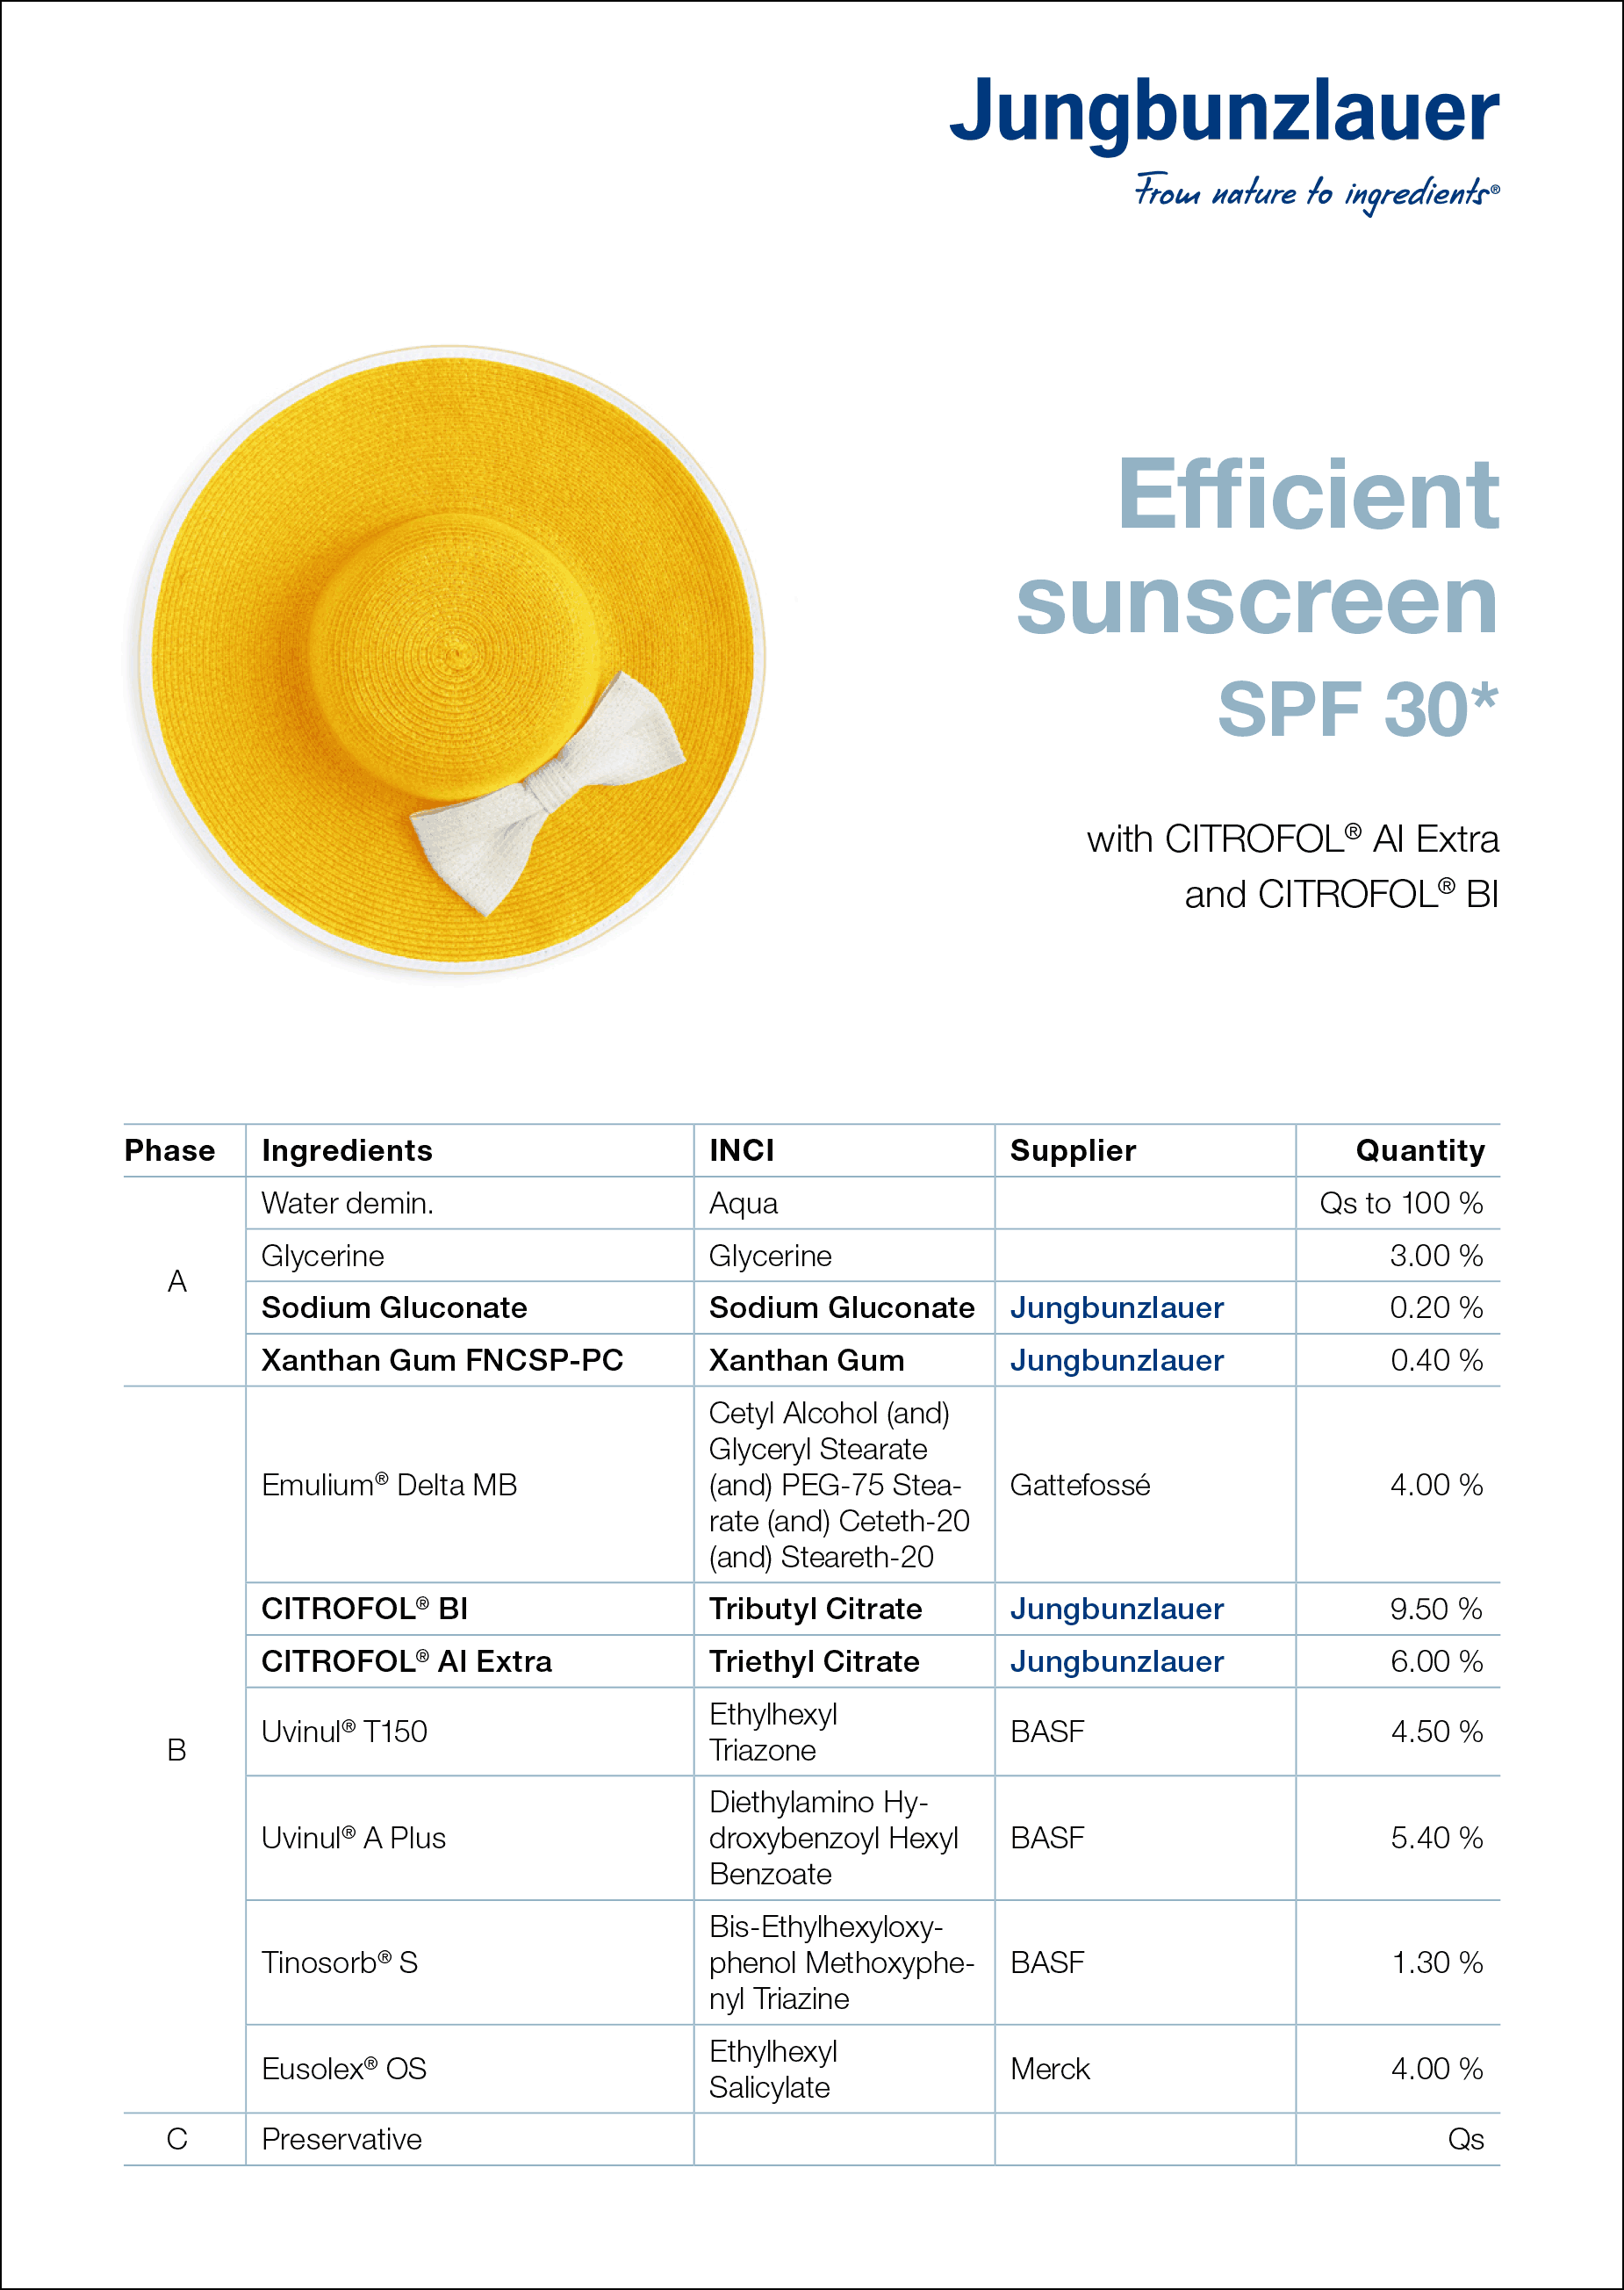 Jungbunzlauer Formulation Efficient Sunscreen SPF 30